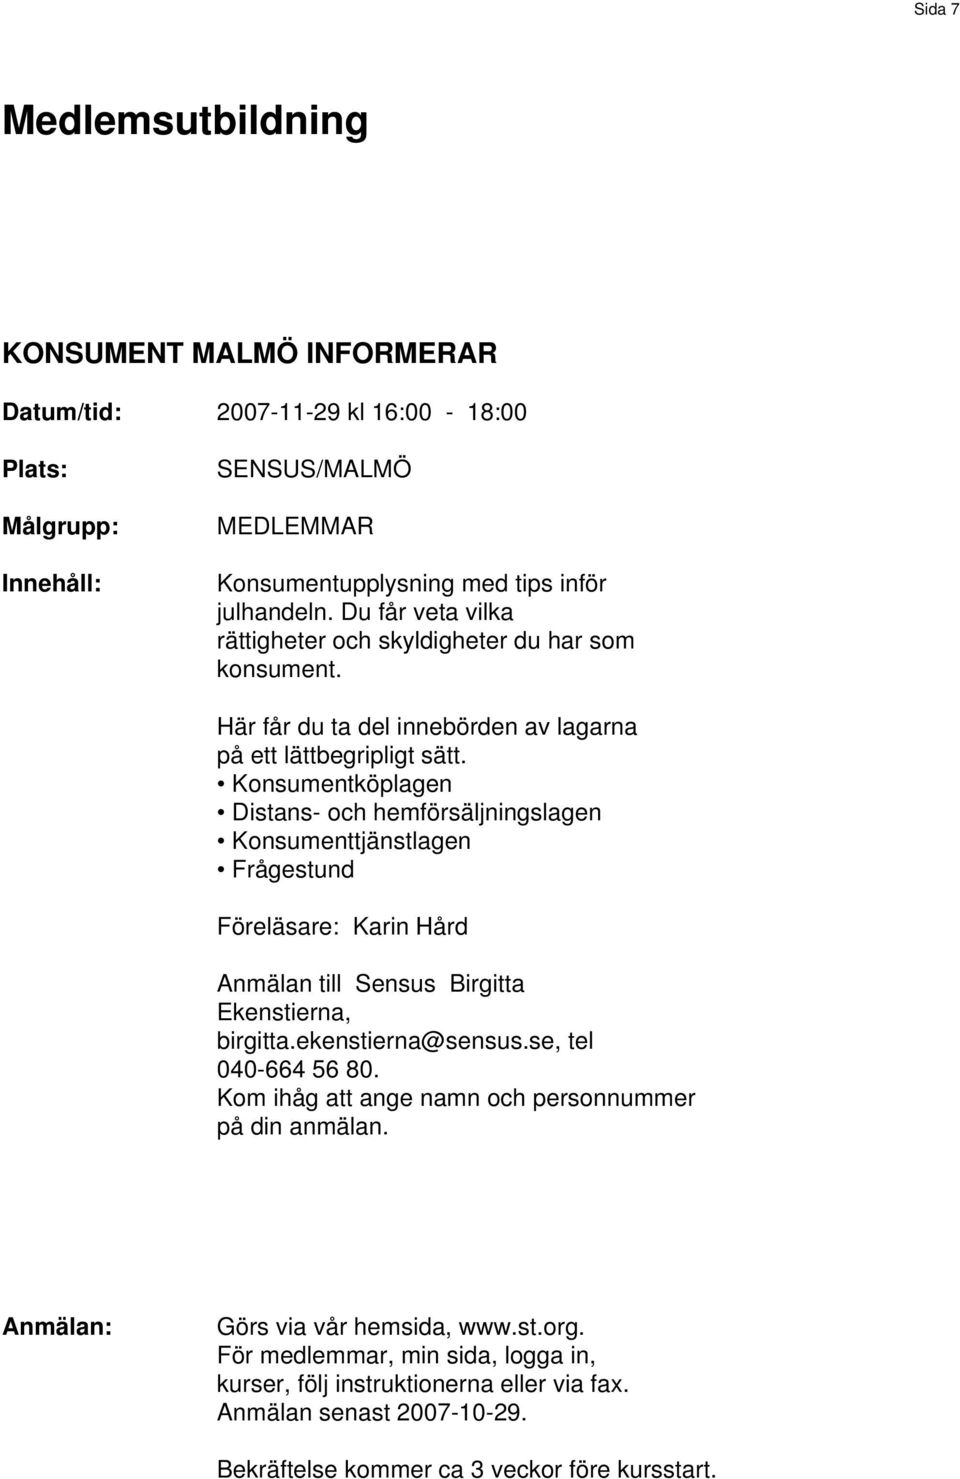 Konsumentköplagen Distans- och hemförsäljningslagen Konsumenttjänstlagen Frågestund Föreläsare: Karin Hård Anmälan till Sensus Birgitta Ekenstierna, birgitta.ekenstierna@sensus.